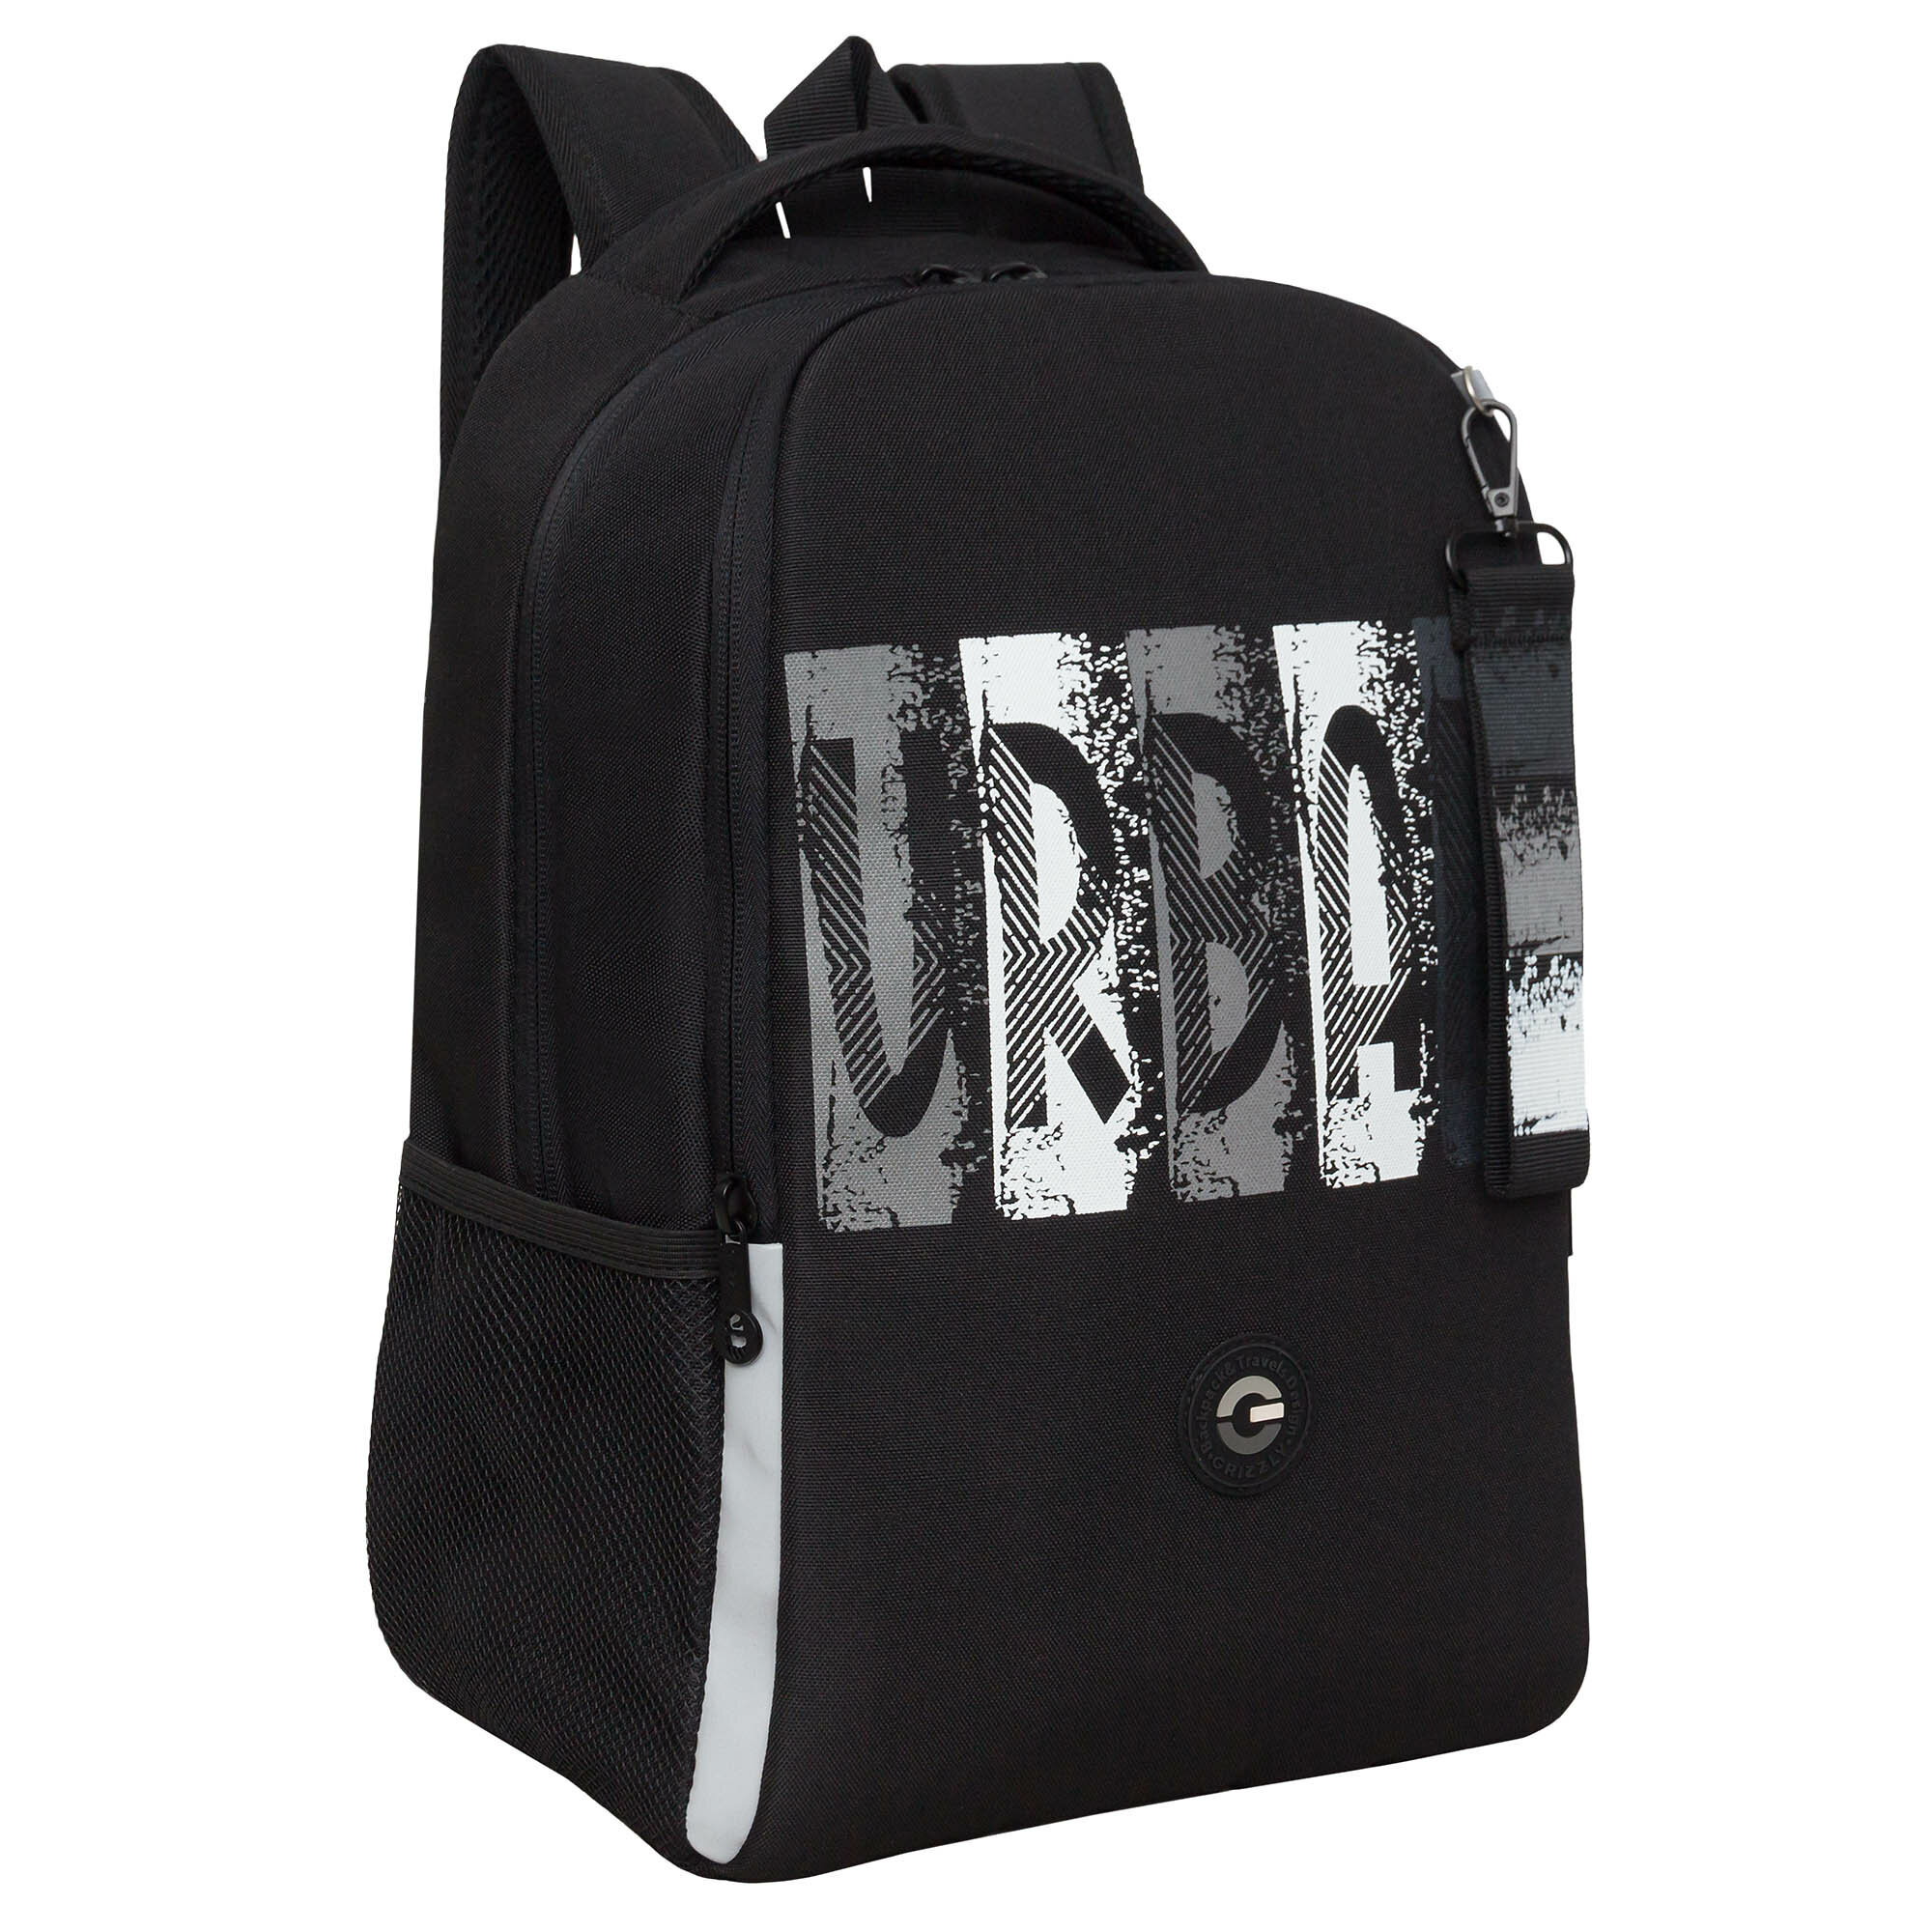 Рюкзак школьный GRIZZLY легкий с жесткой спинкой, двумя отделениями, для мальчика RB-451-3/2